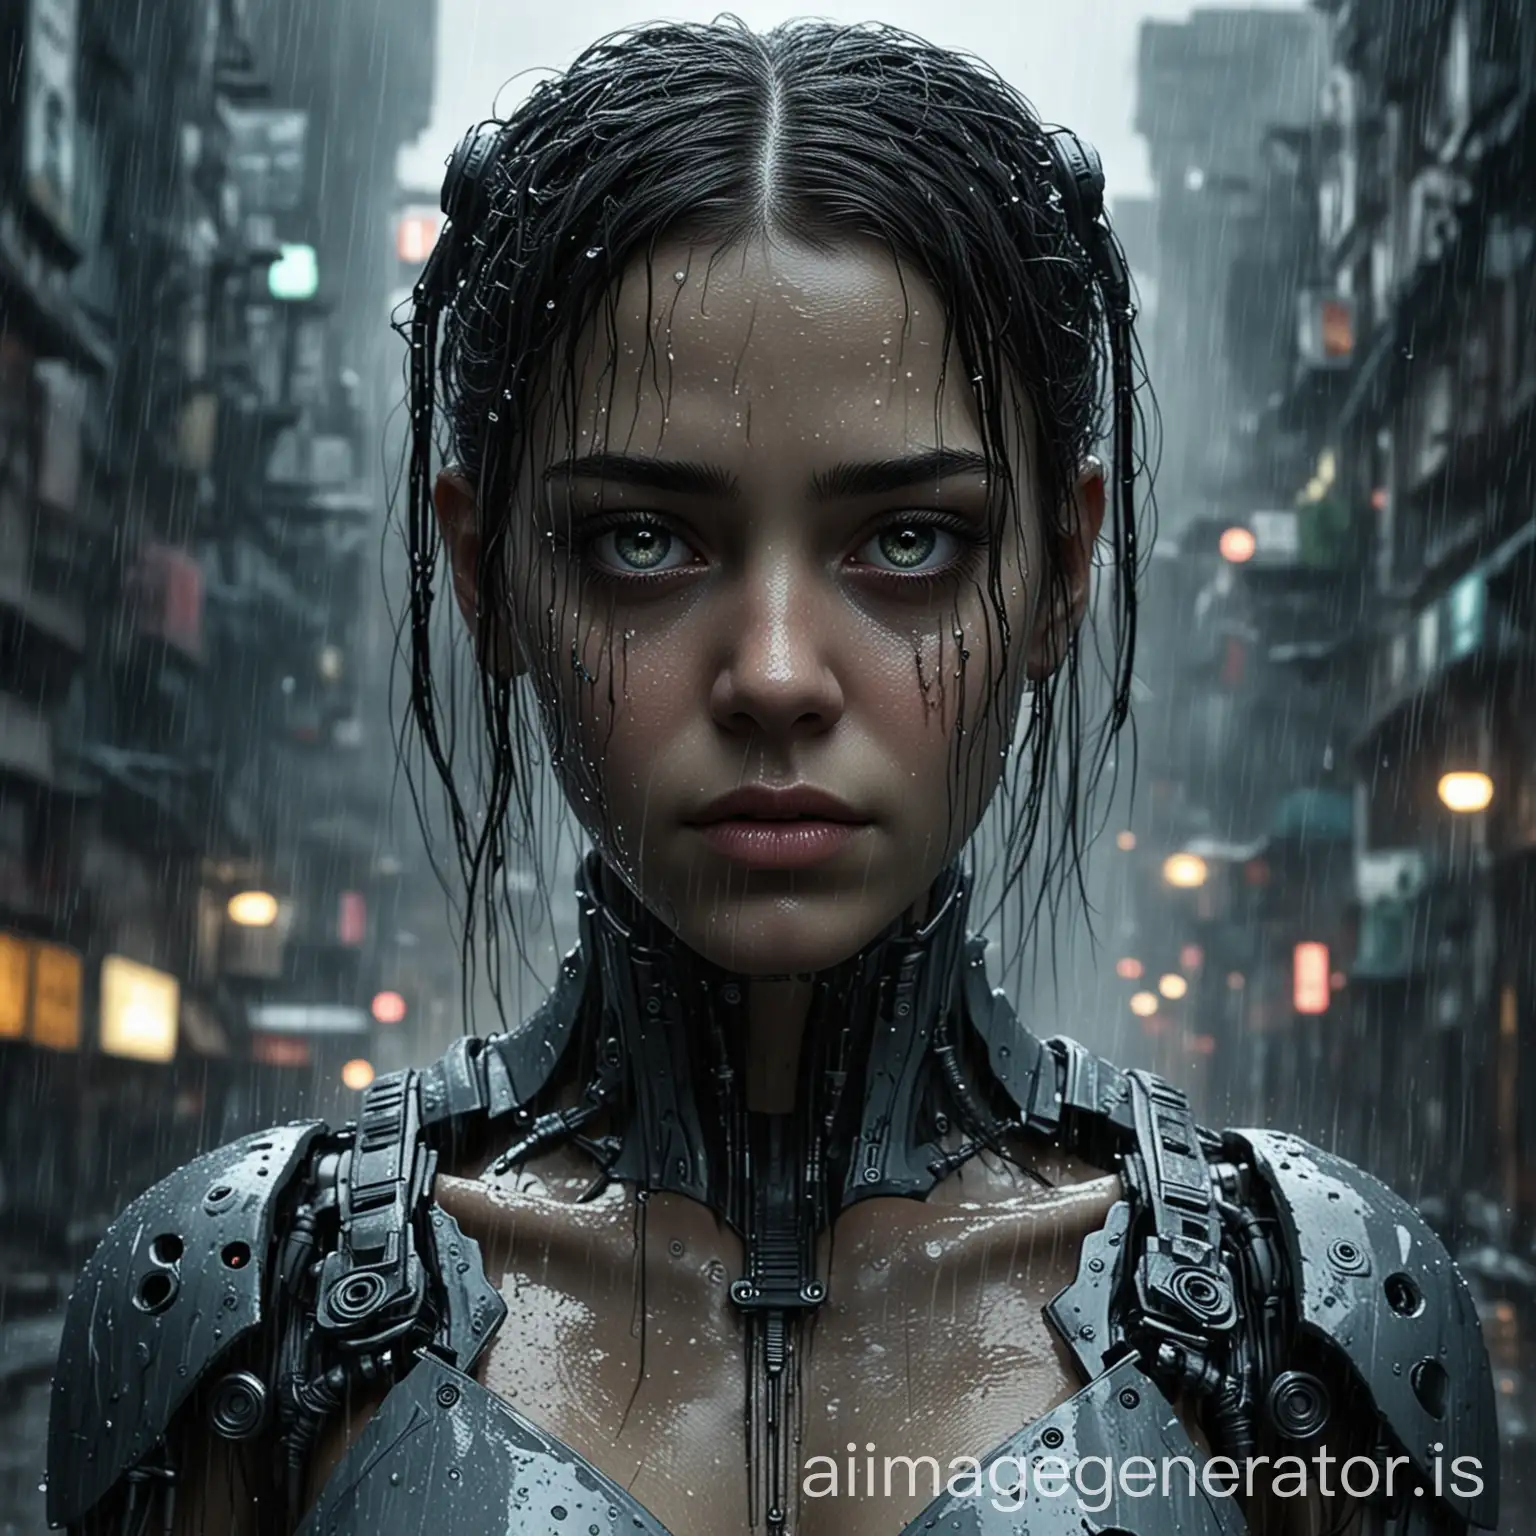 Cyborg-Girl-in-Dark-City-Rain-Realistic-and-Pretty-Movie-Poster